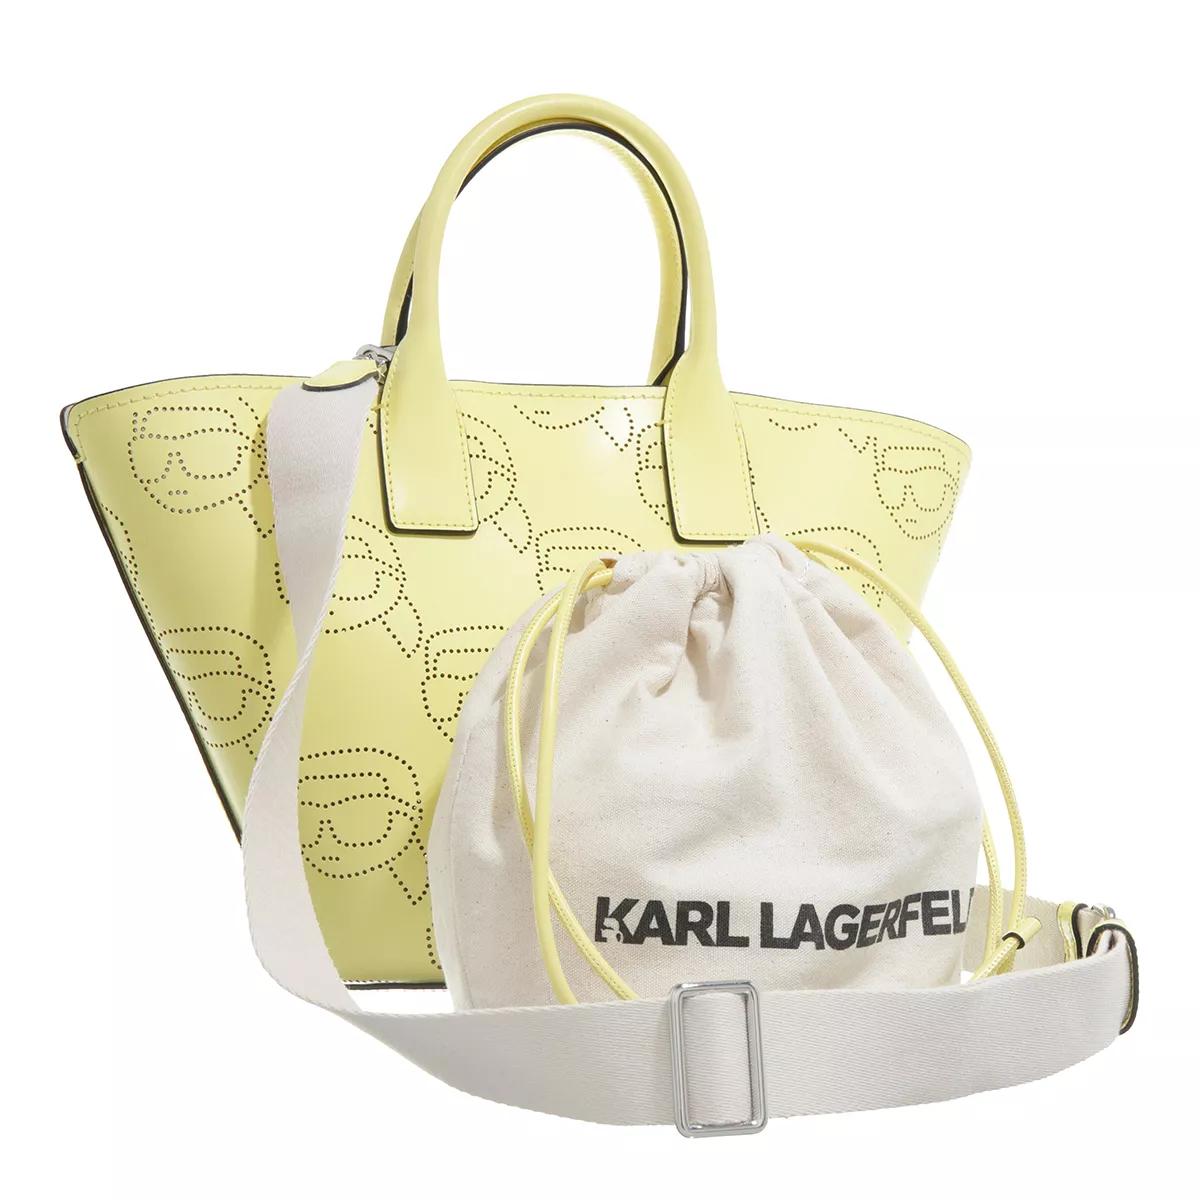 Karl Lagerfeld Totes K Ikonik 2.0 Perforated Tote in geel